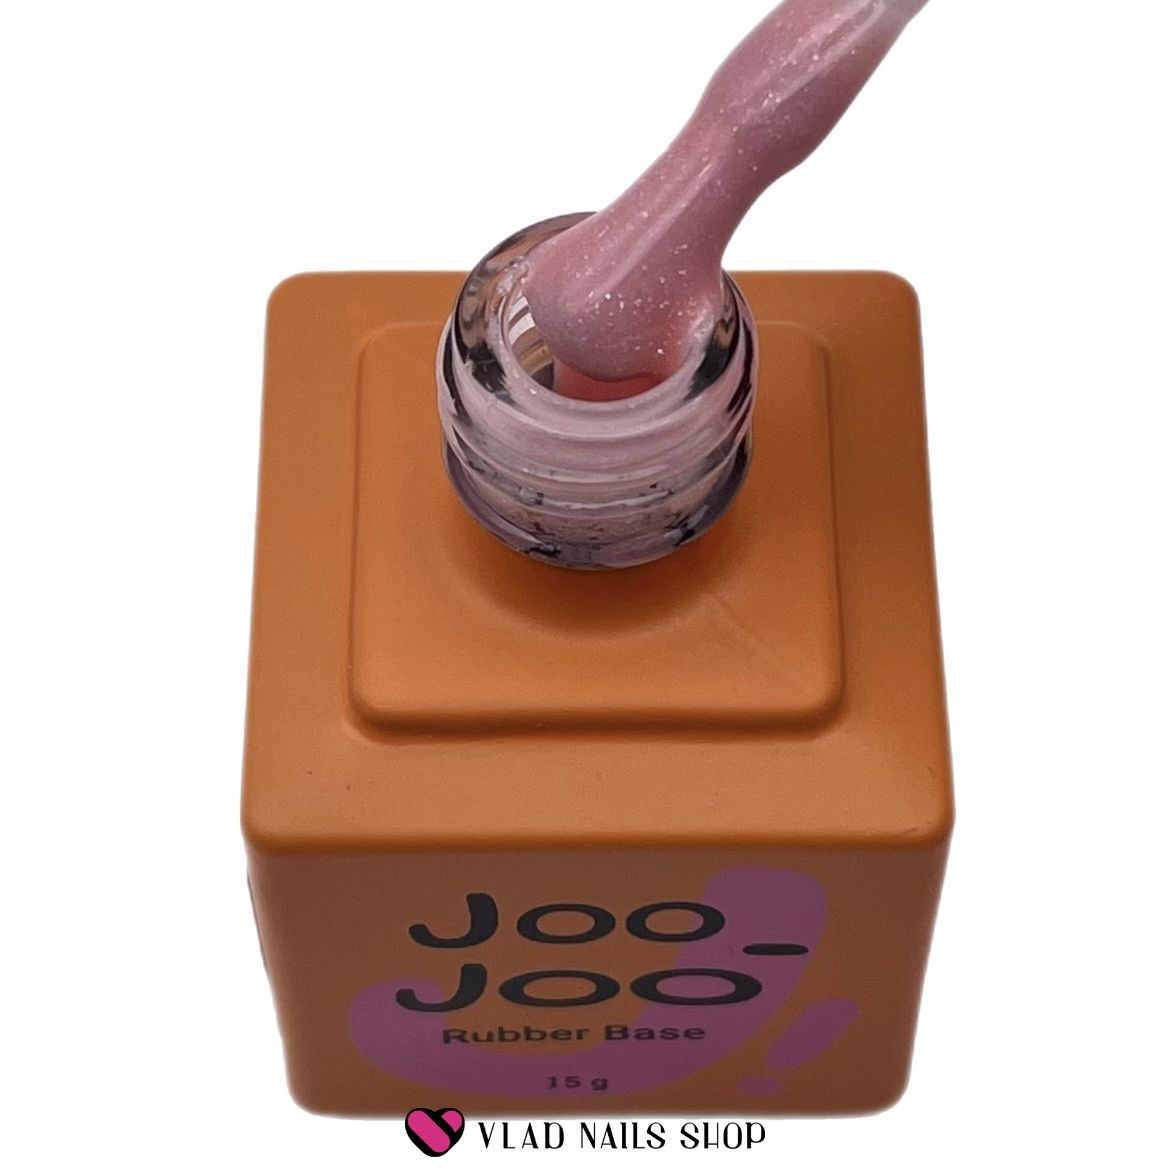 База JOO-JOO камуфлирующая Rubber Base Shine №04 15г